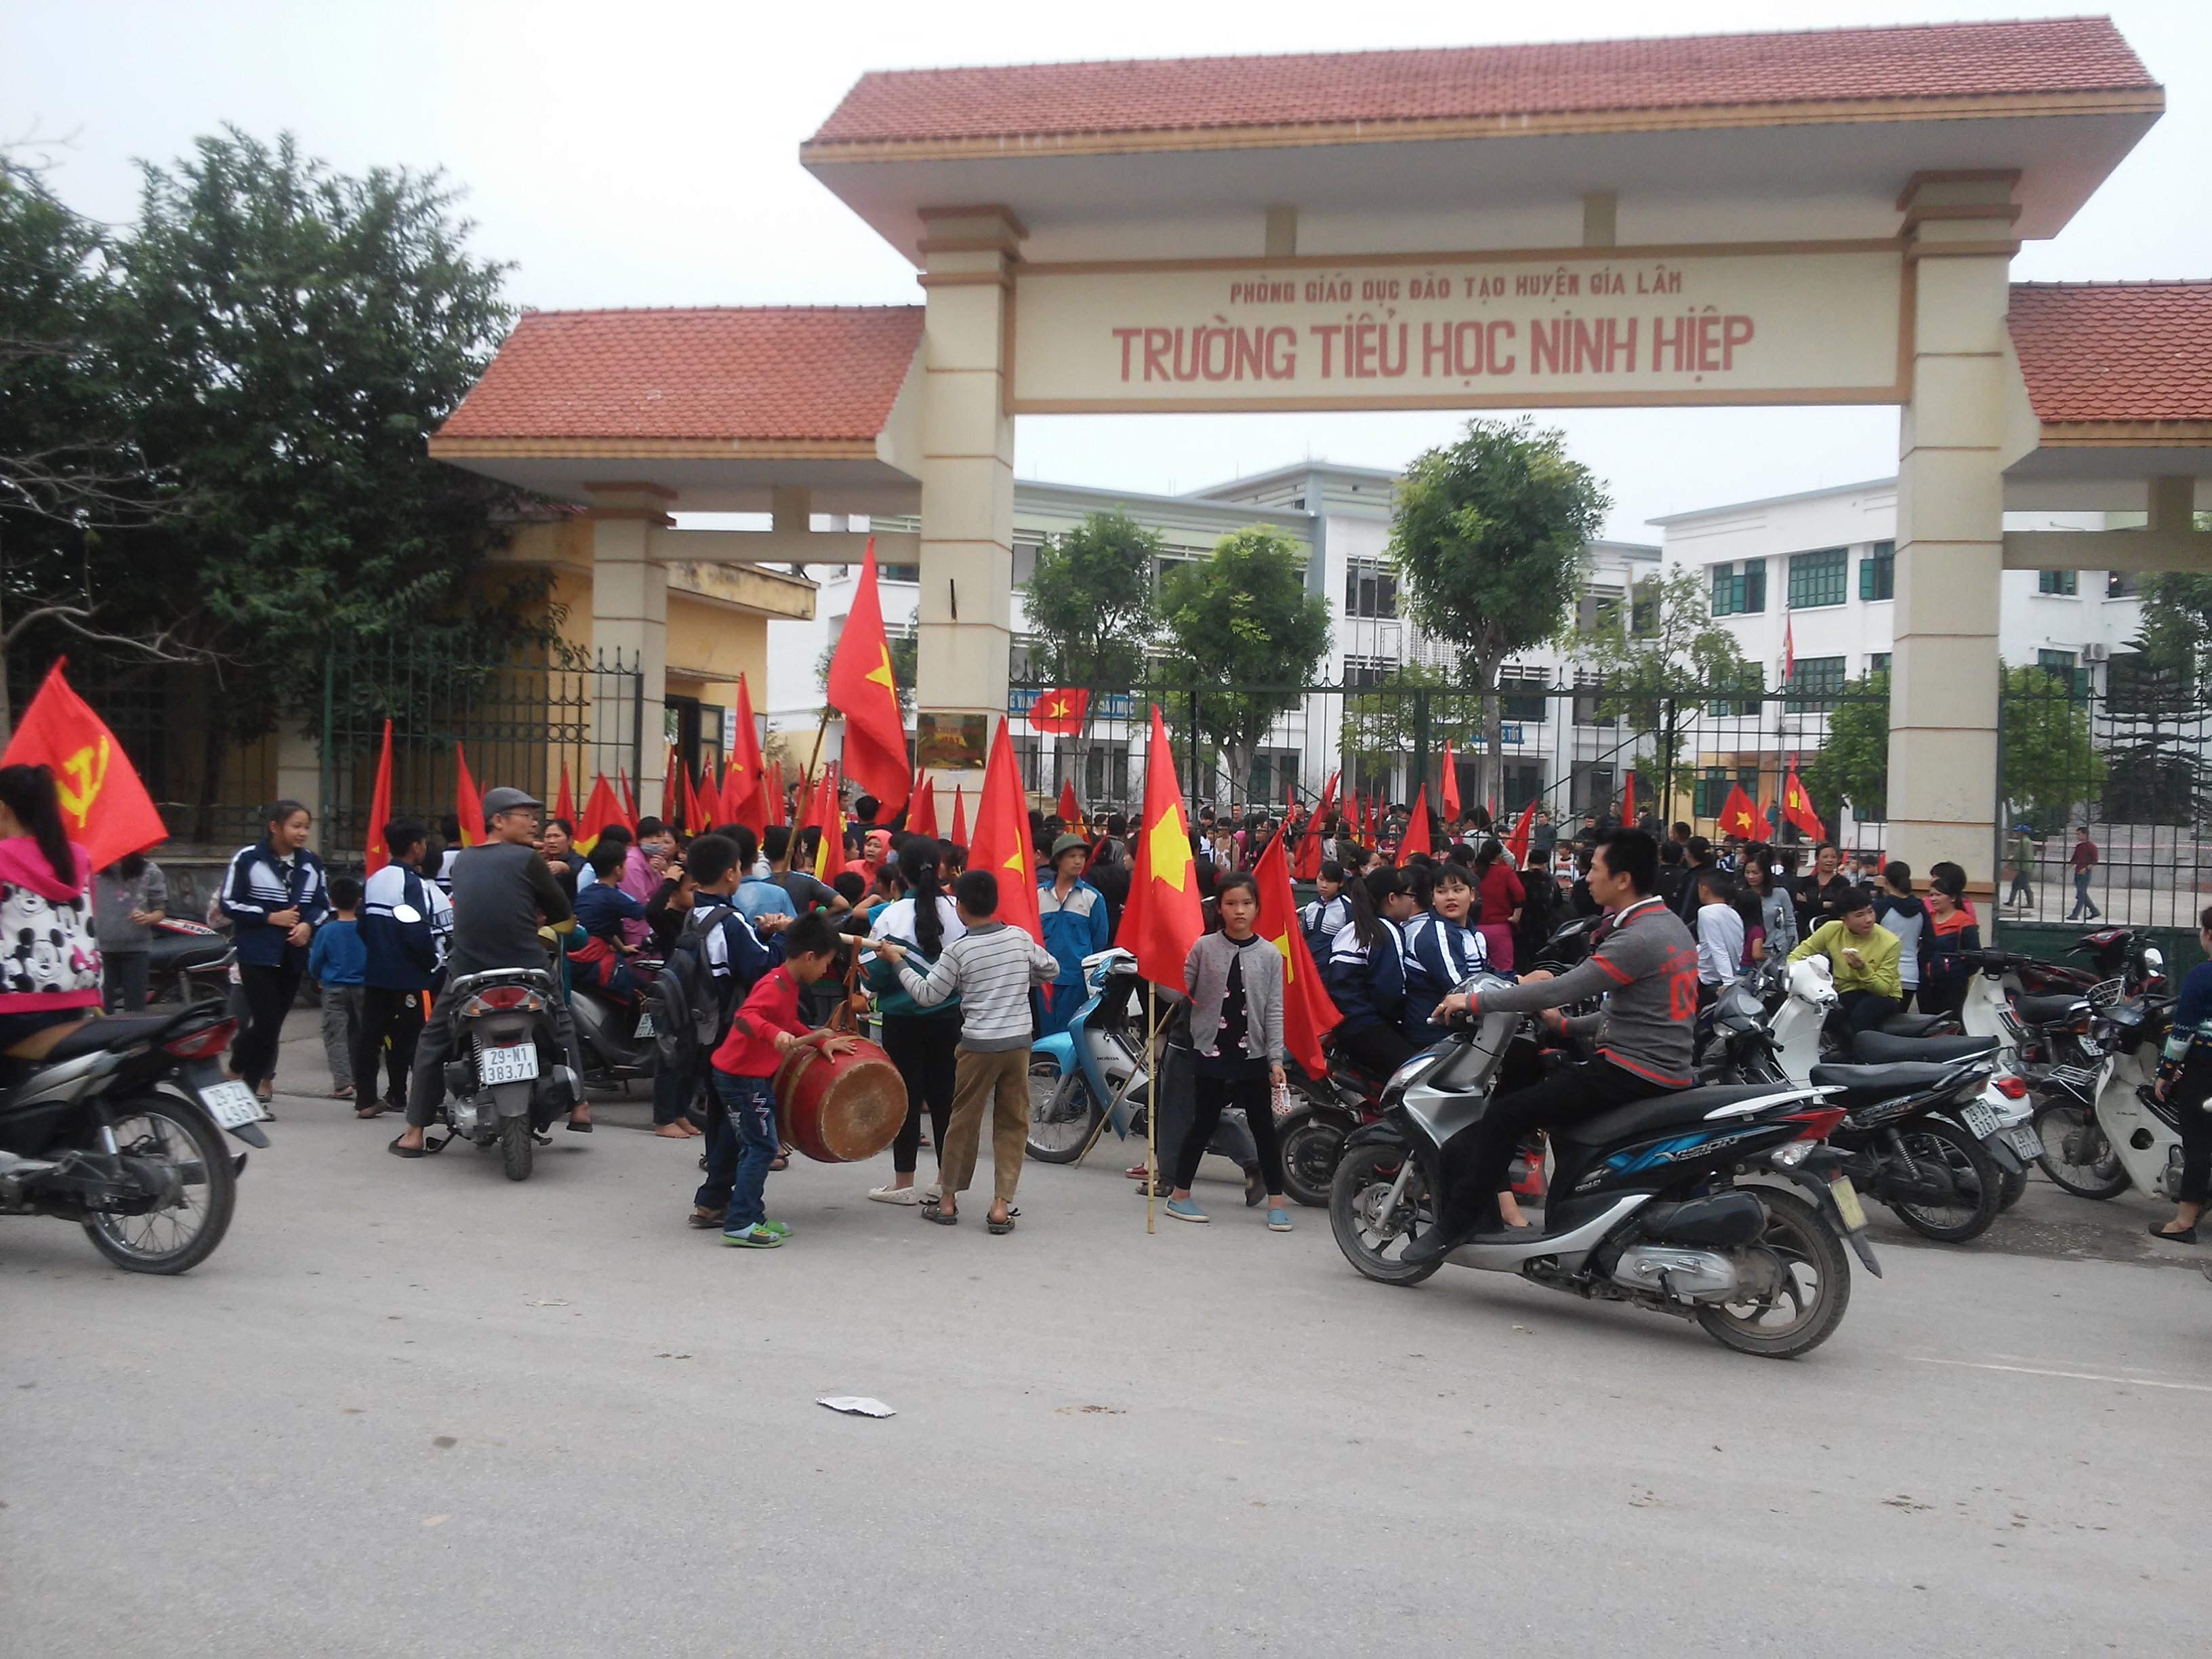 Cả trăm học sinh tiểu học, trung học cơ sở tập trung trước cổng trường tiểu học Ninh Hiệp phản đối xây trung tâm thương mại 